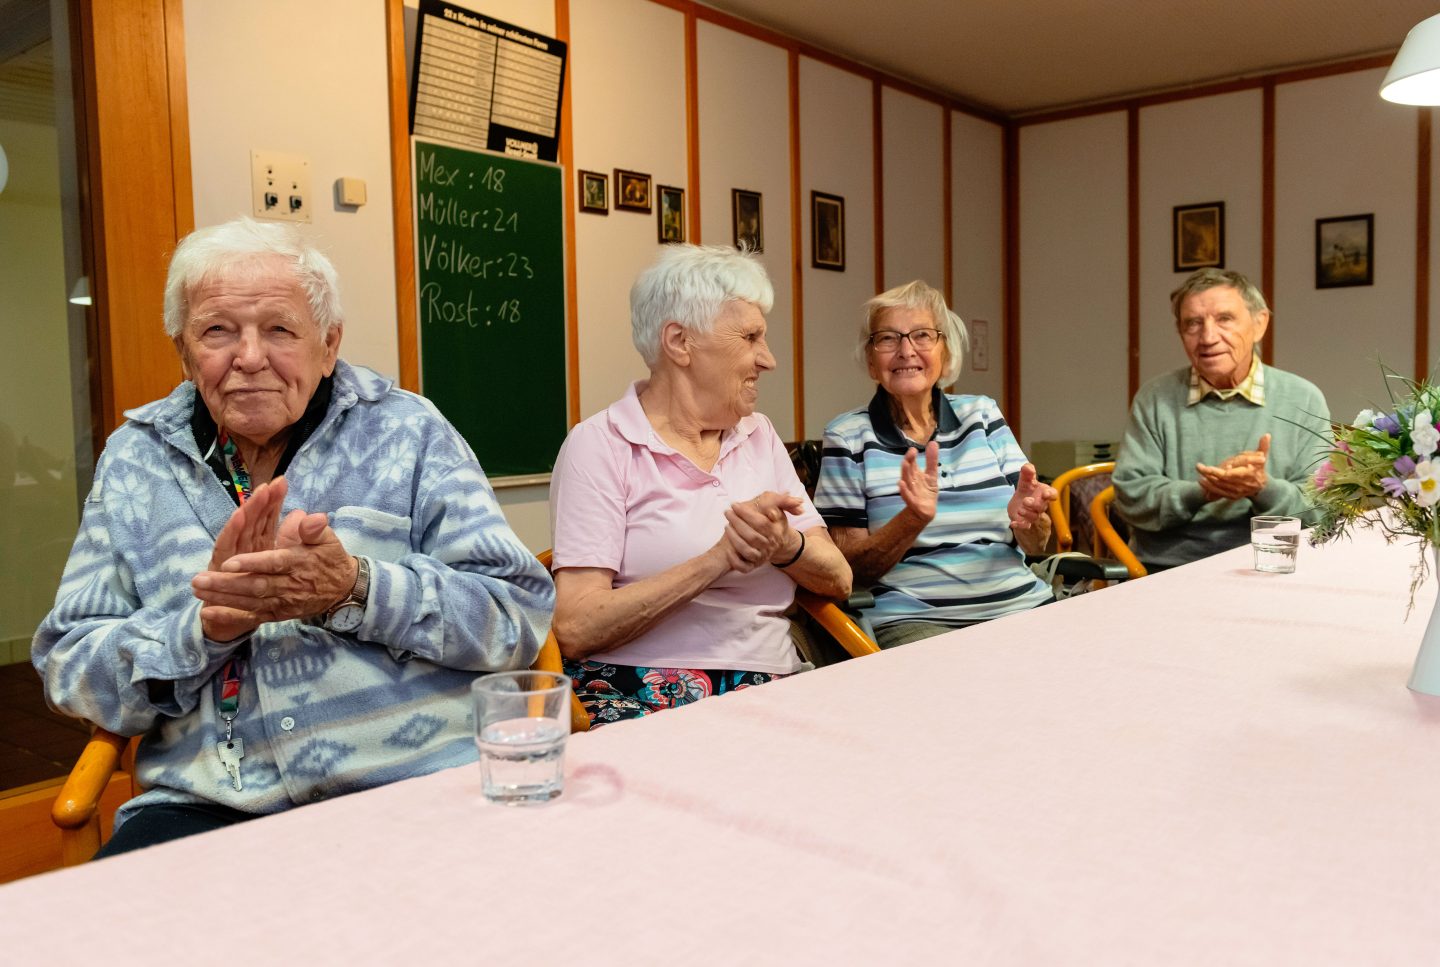 Vier Senioren klatschen und freuen sich zusammen am Esstisch